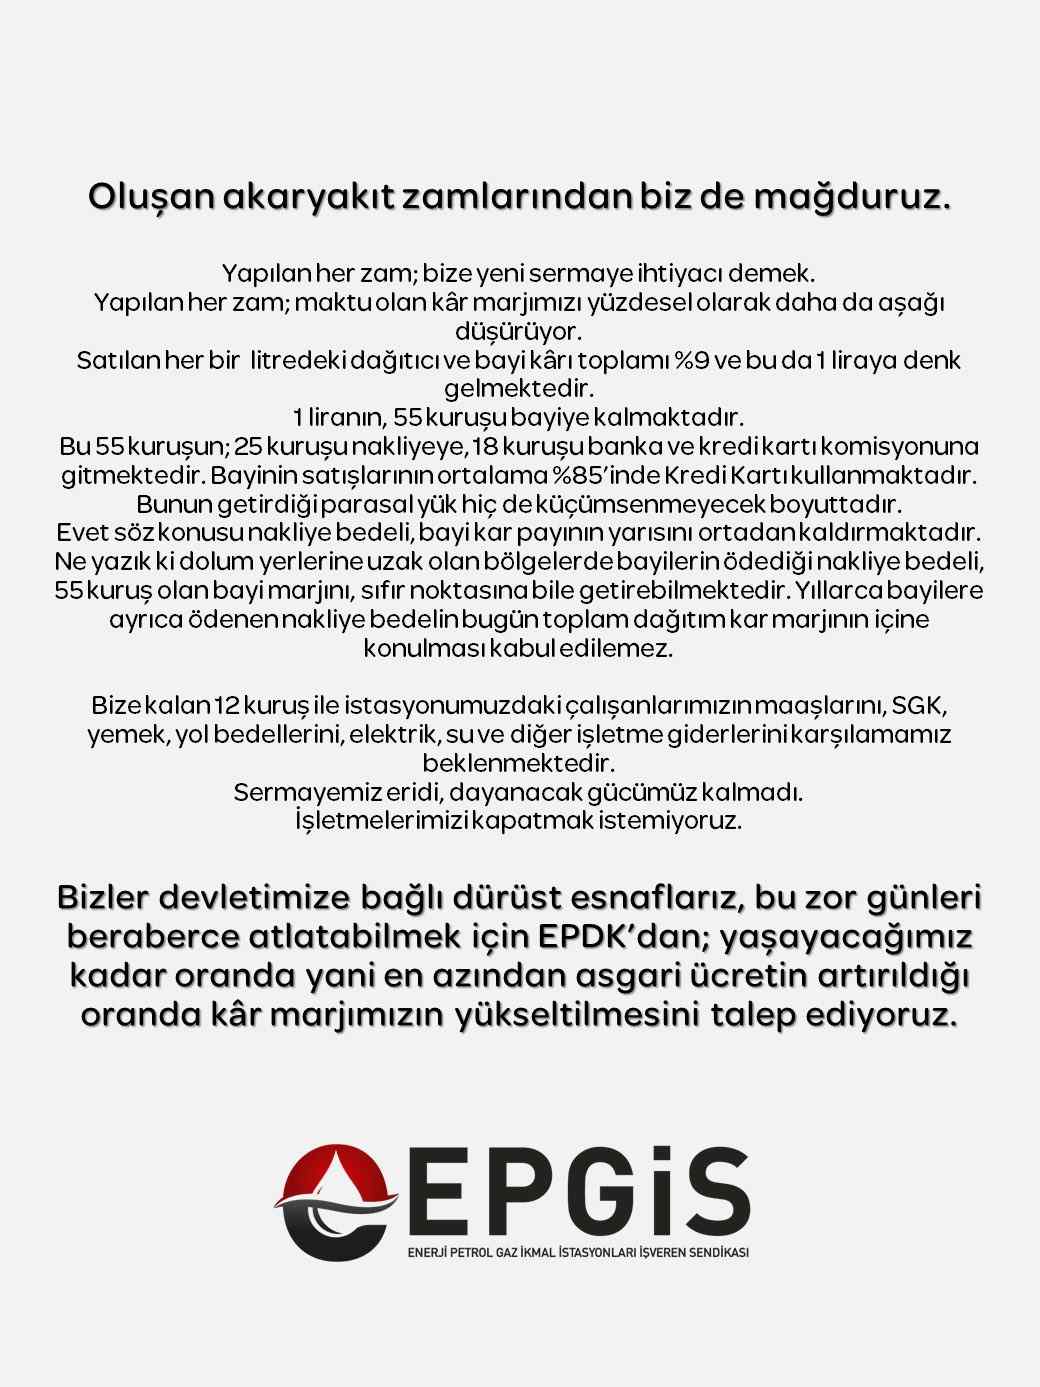 EPGİS'ten Kar Marjlarının Yükseltilmesi Talebi: Akaryakıt Zamlarından Mağduruz